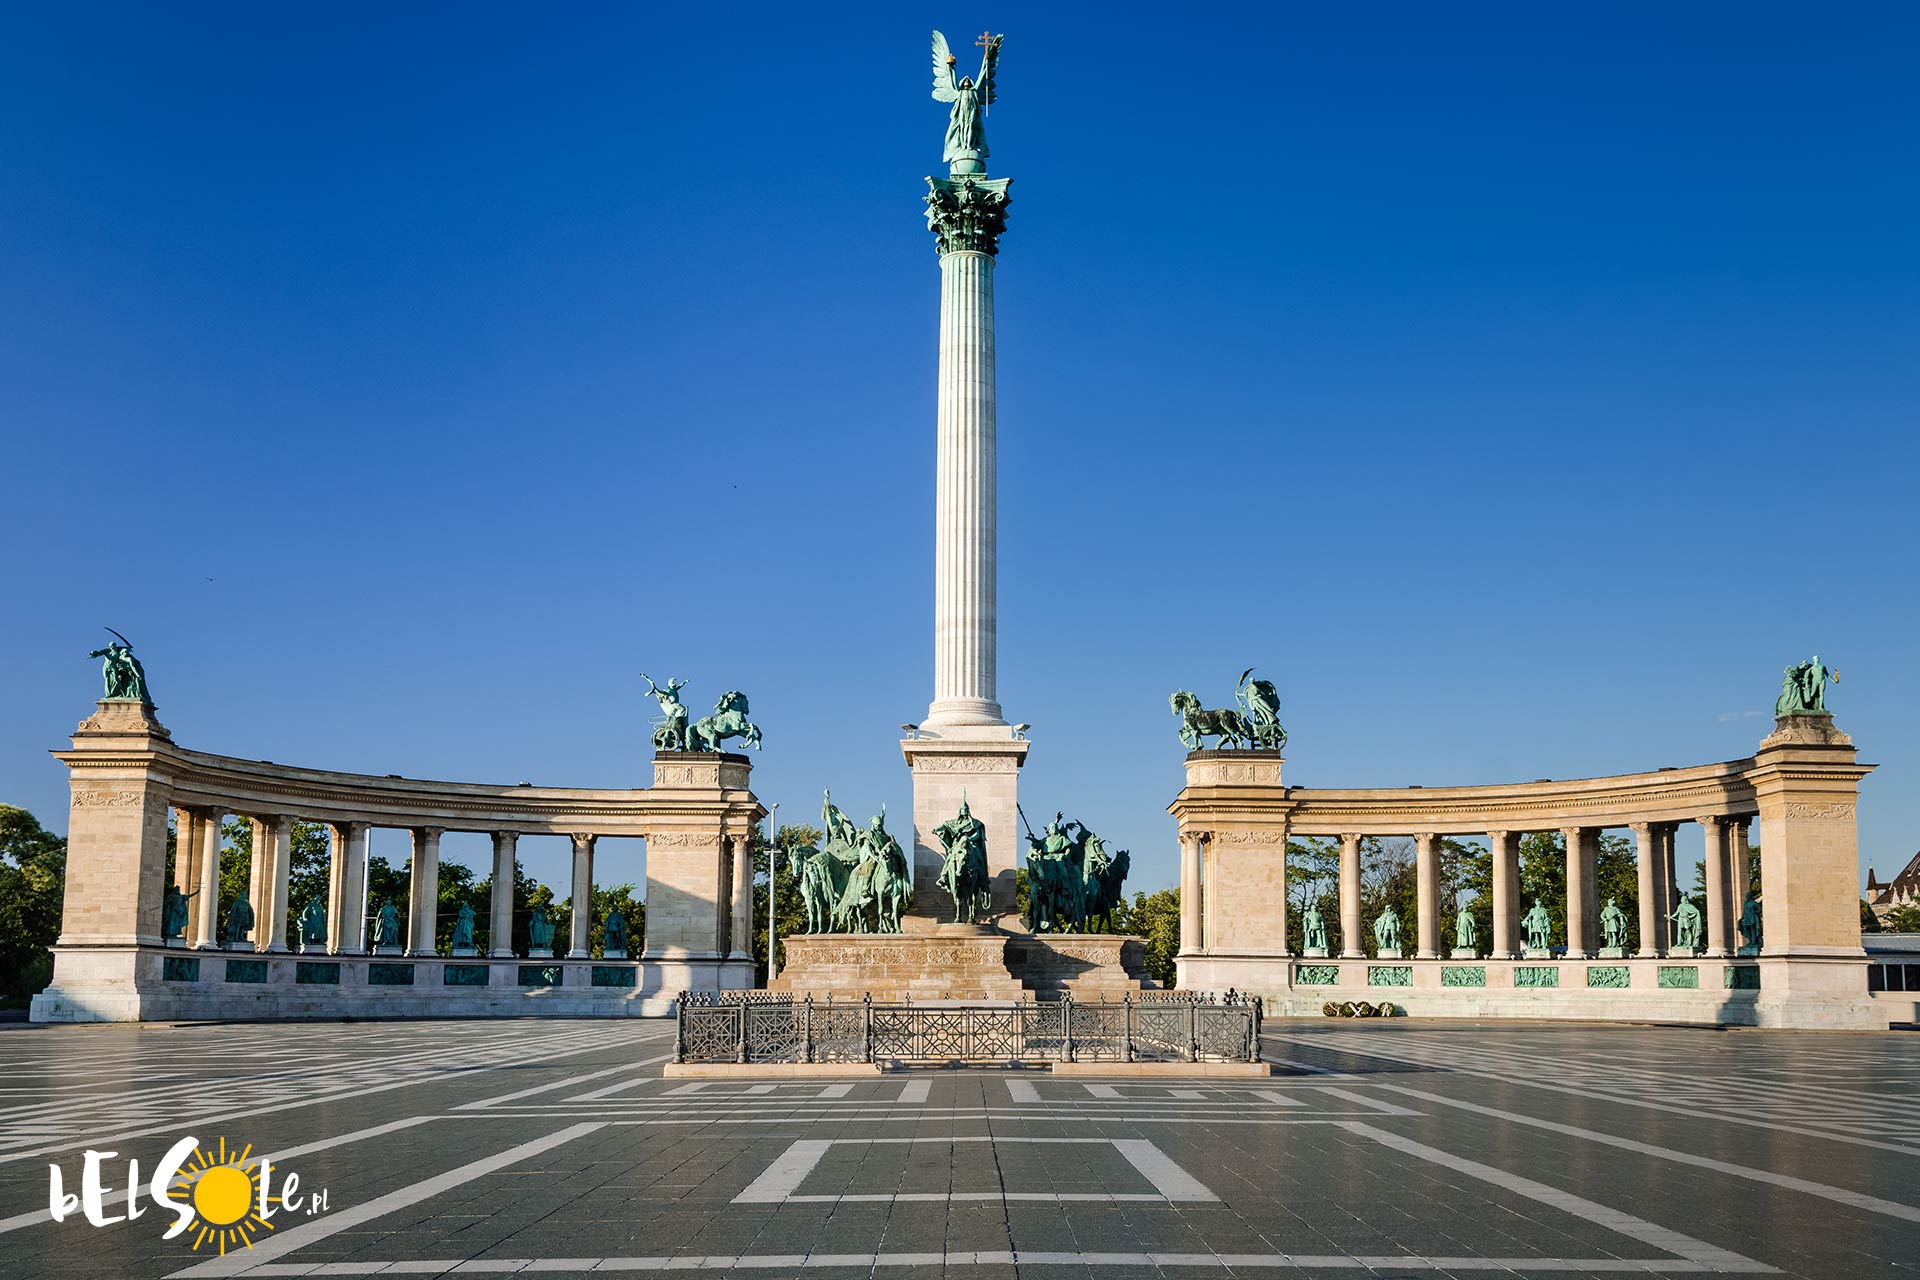 Plac Bohaterów w Budapeszcie